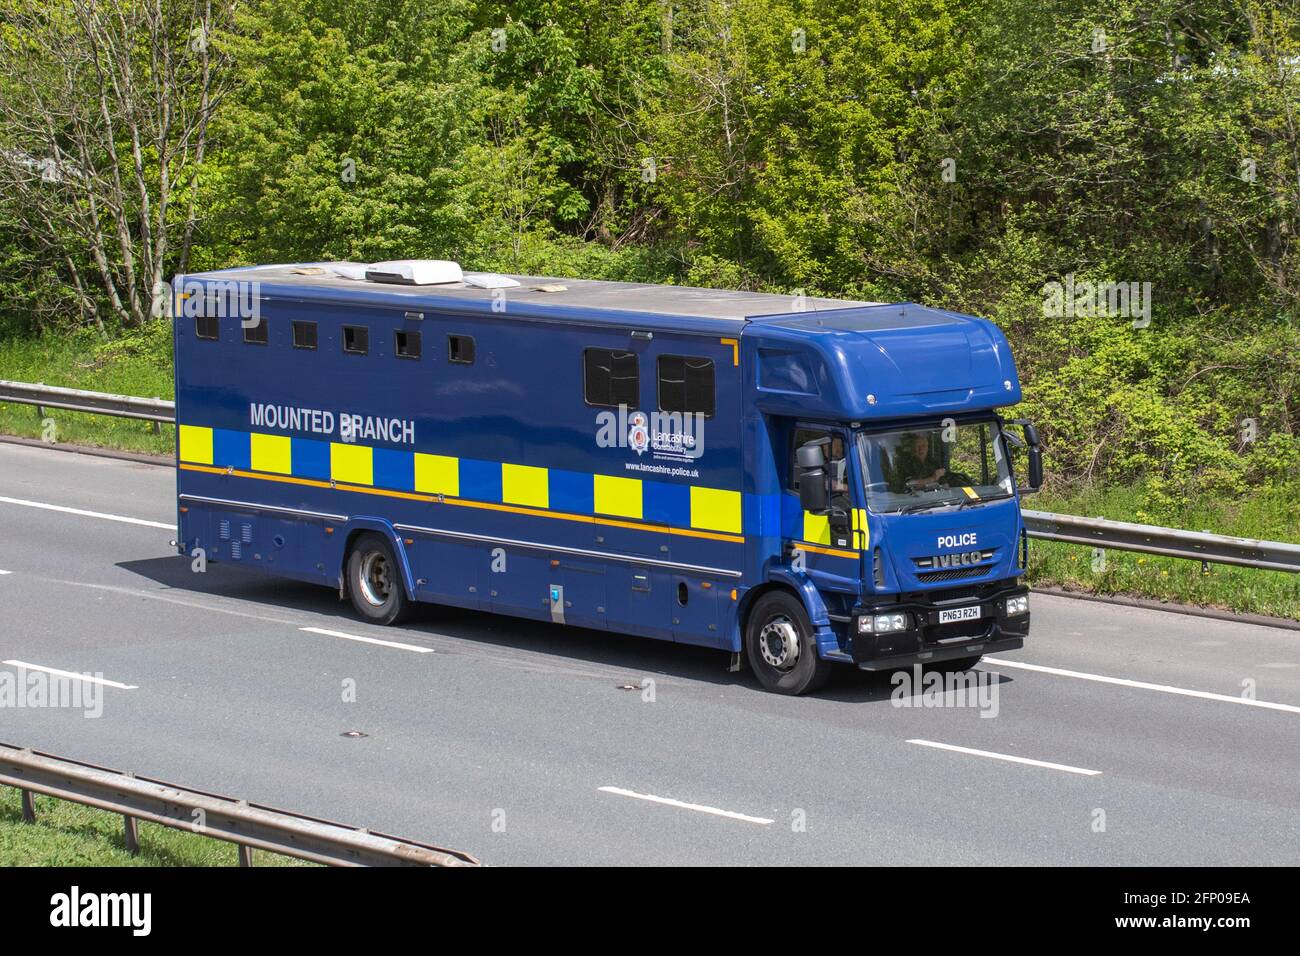 Lancashire Constabulary großer Polizeiwagen; Umbau eines Reisebusses für Pferdetiertransporte auf der Autobahn M61, Lancashire, Großbritannien Stockfoto